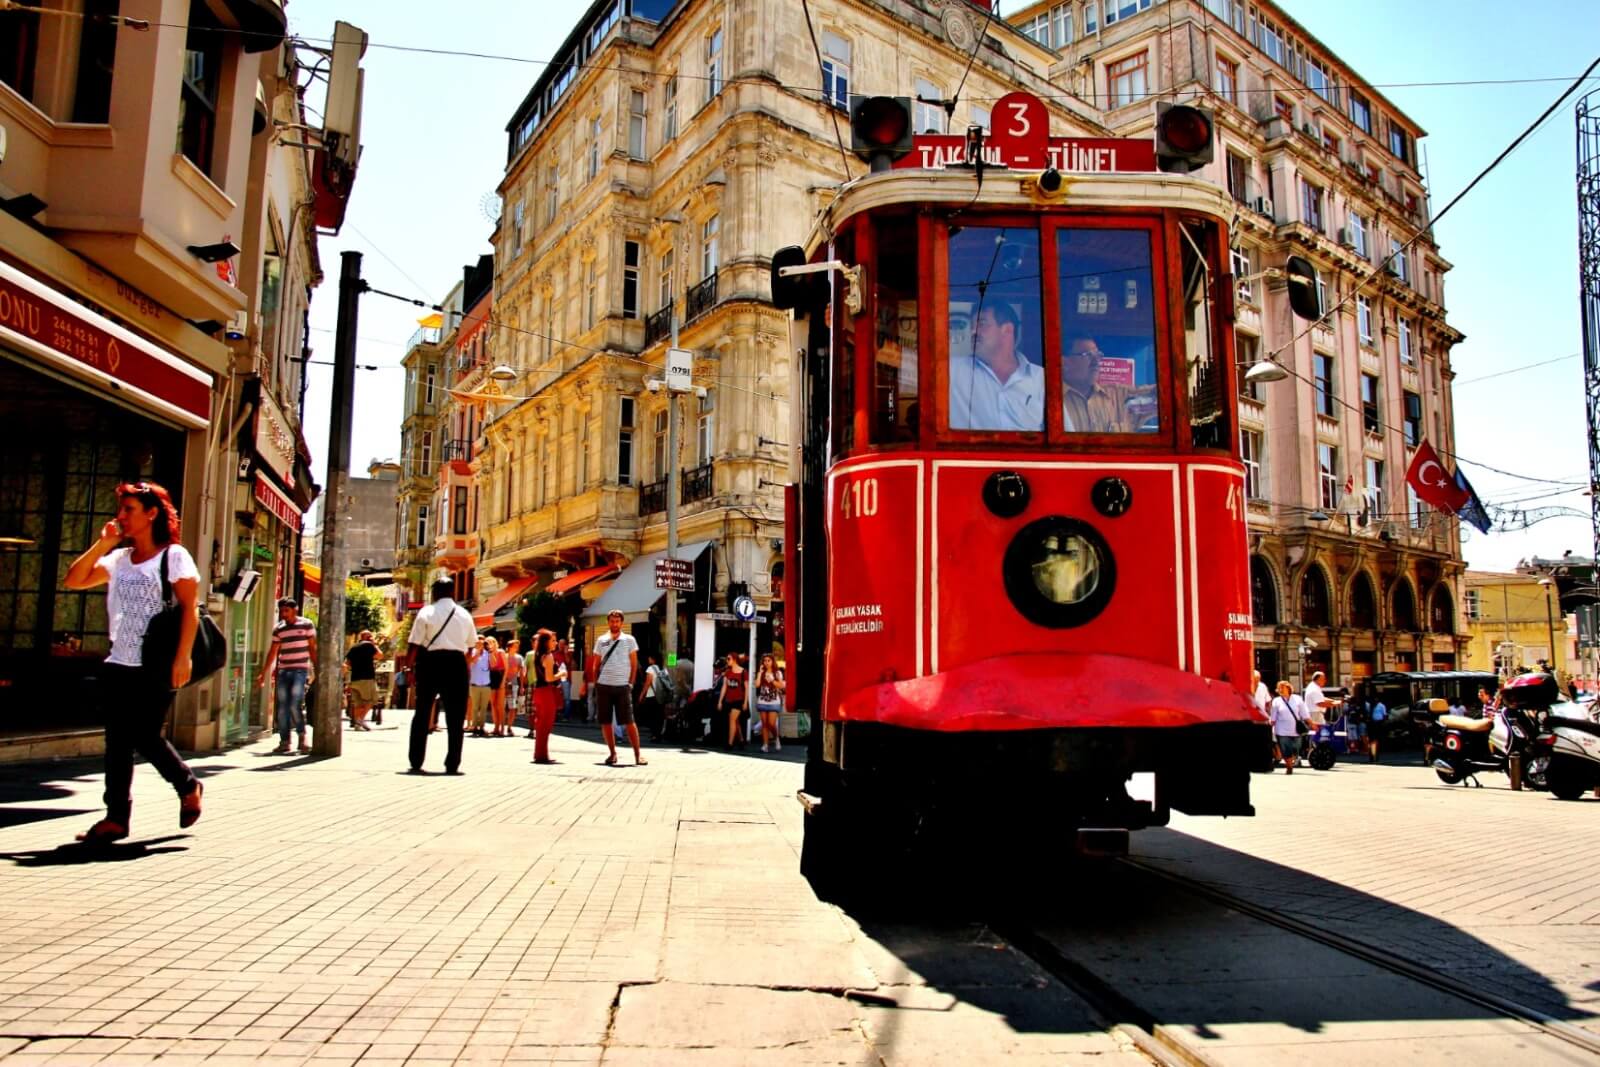 شارع الاستقلال في اسطنبول